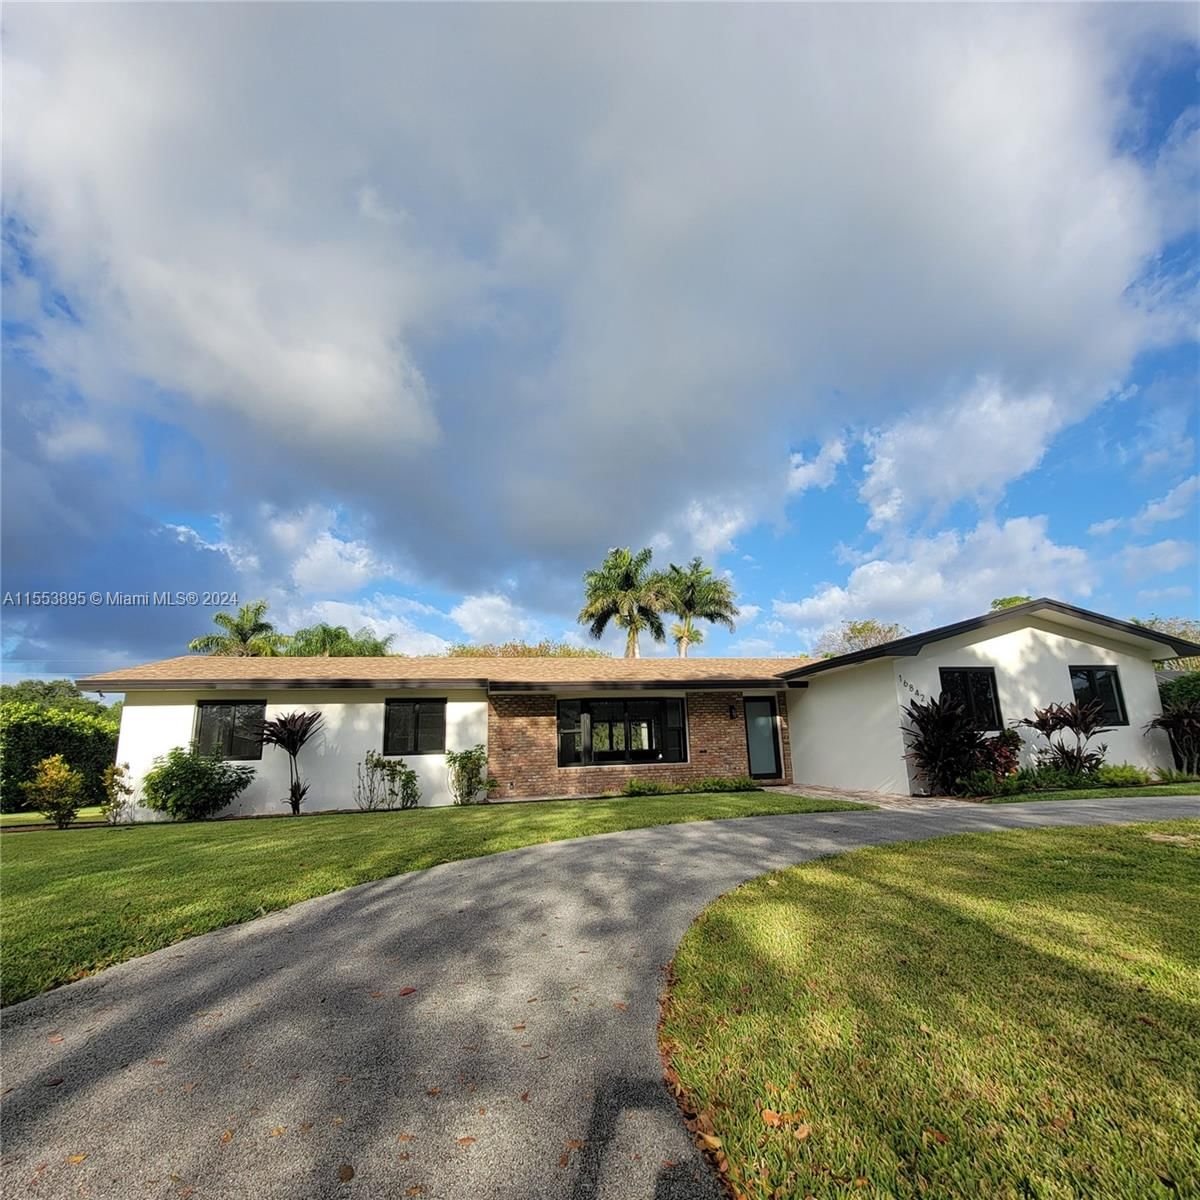 Real estate property located at 16842 86th Ave, Miami-Dade County, MARAL ESTATES SEC 3, Palmetto Bay, FL